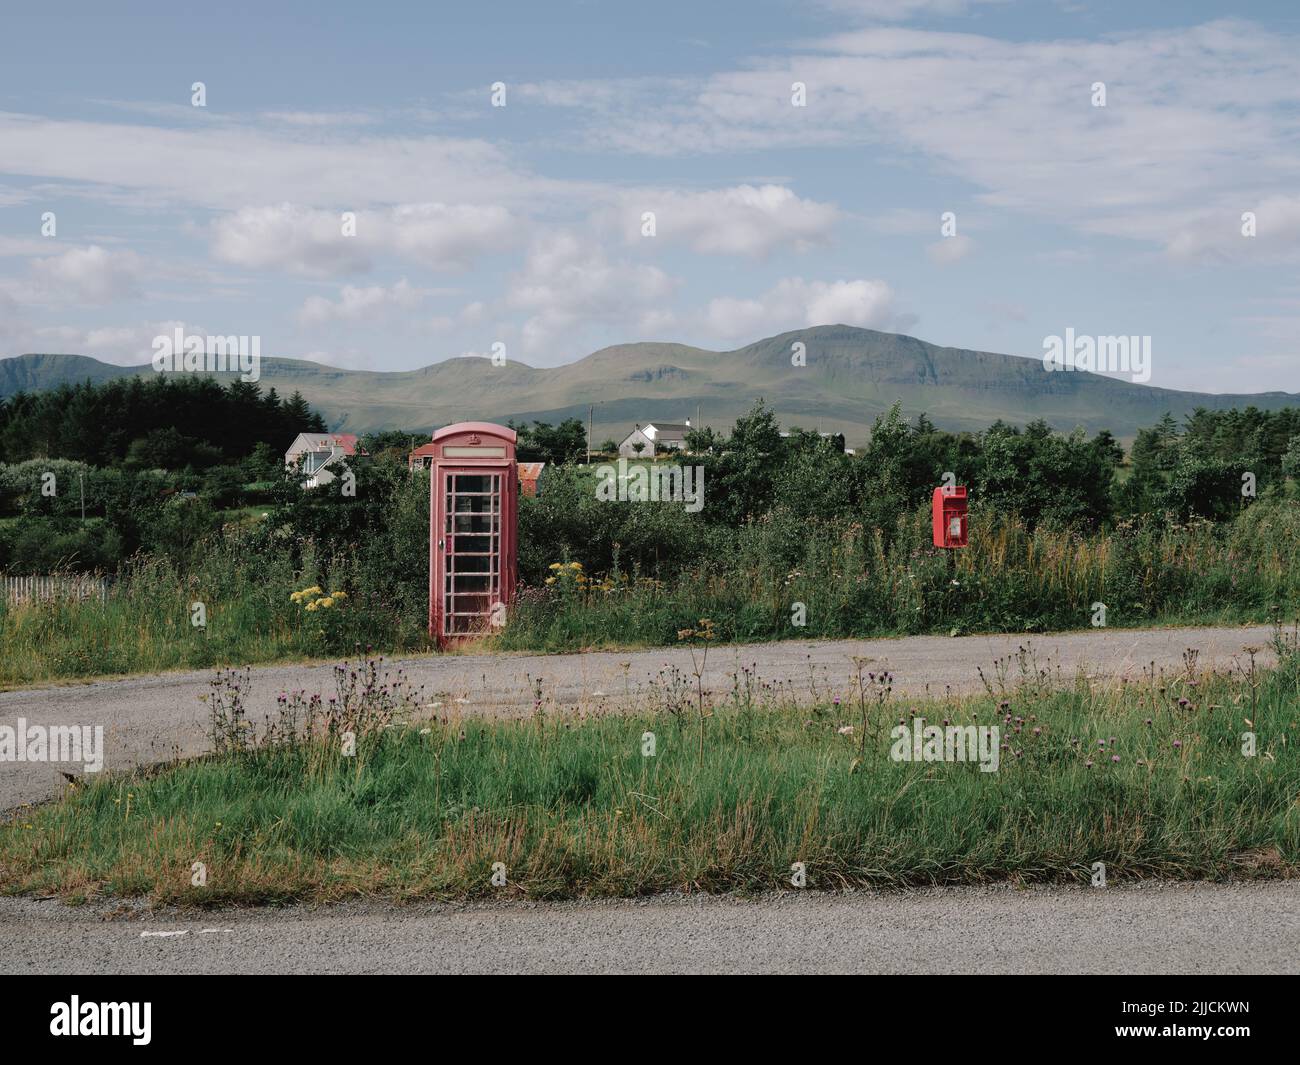 Una caja de teléfono roja y una caja de correo Royal Mail en el remoto y aislado paisaje de la península de Trotternish, Isla de Skye, West Highlands, Escocia, Reino Unido Foto de stock